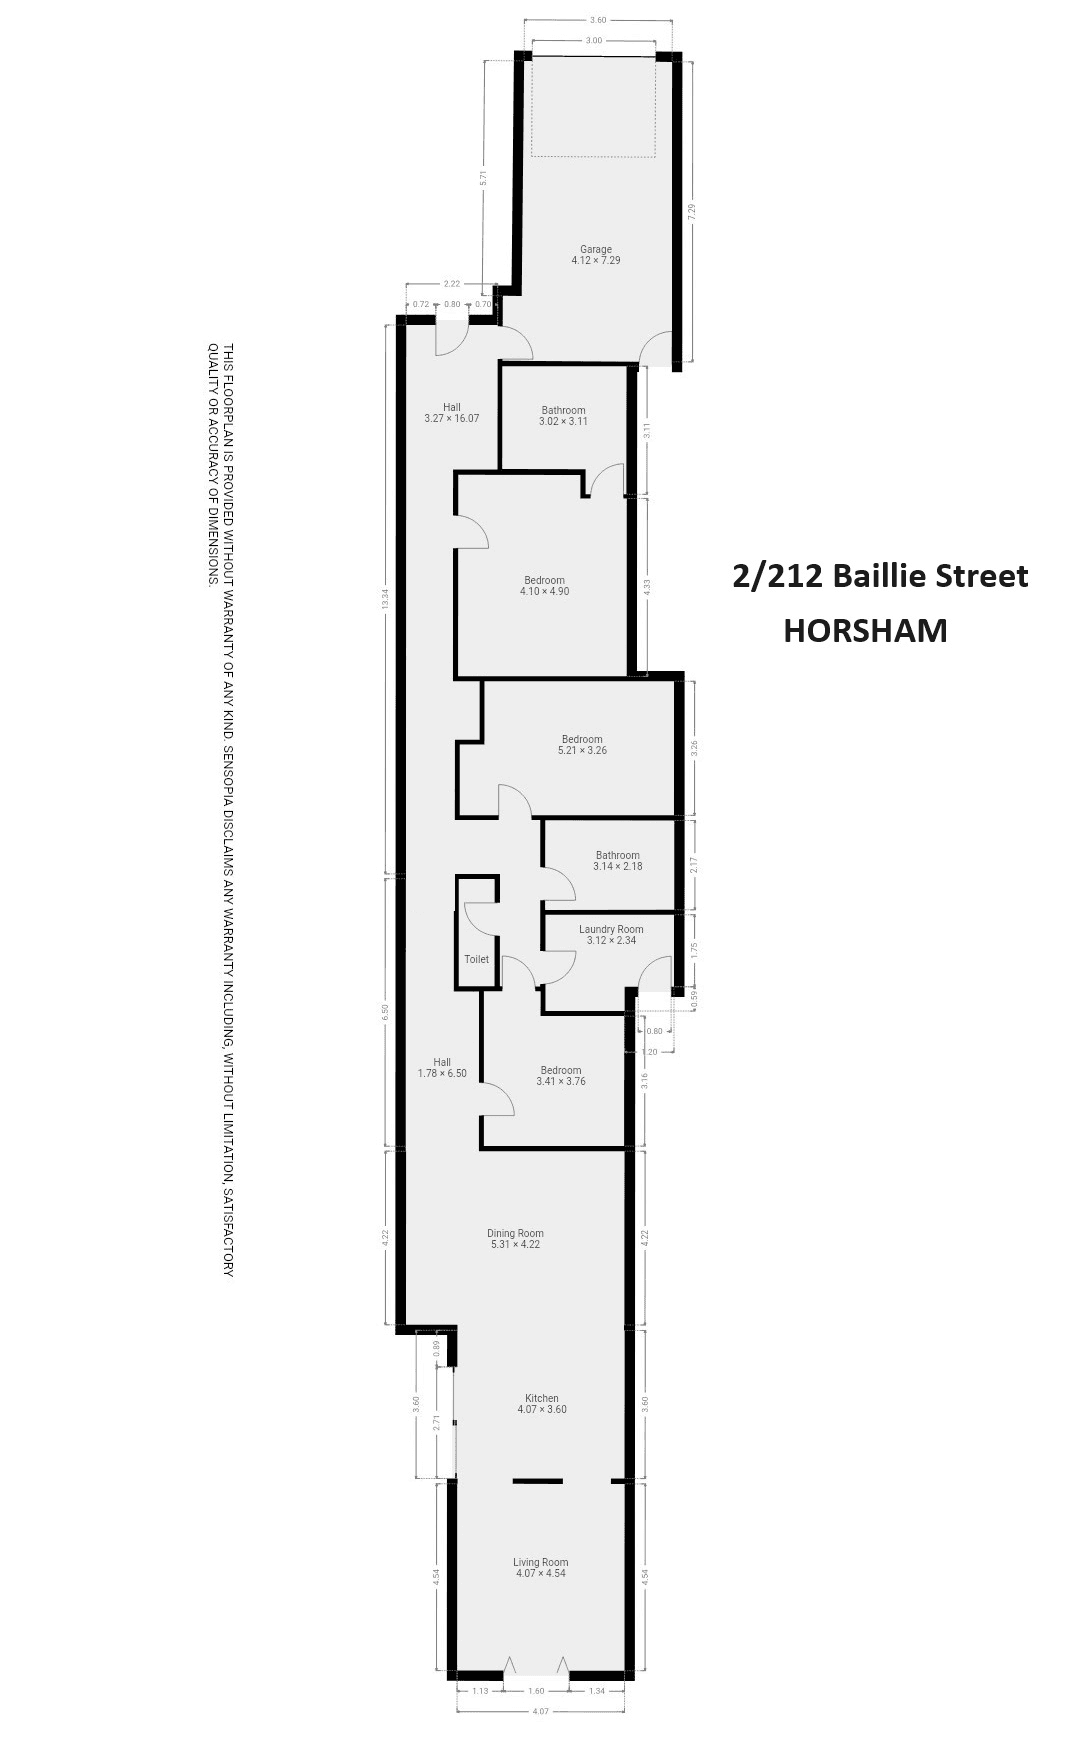 2/212 Baillie Street, HORSHAM, VIC 3400